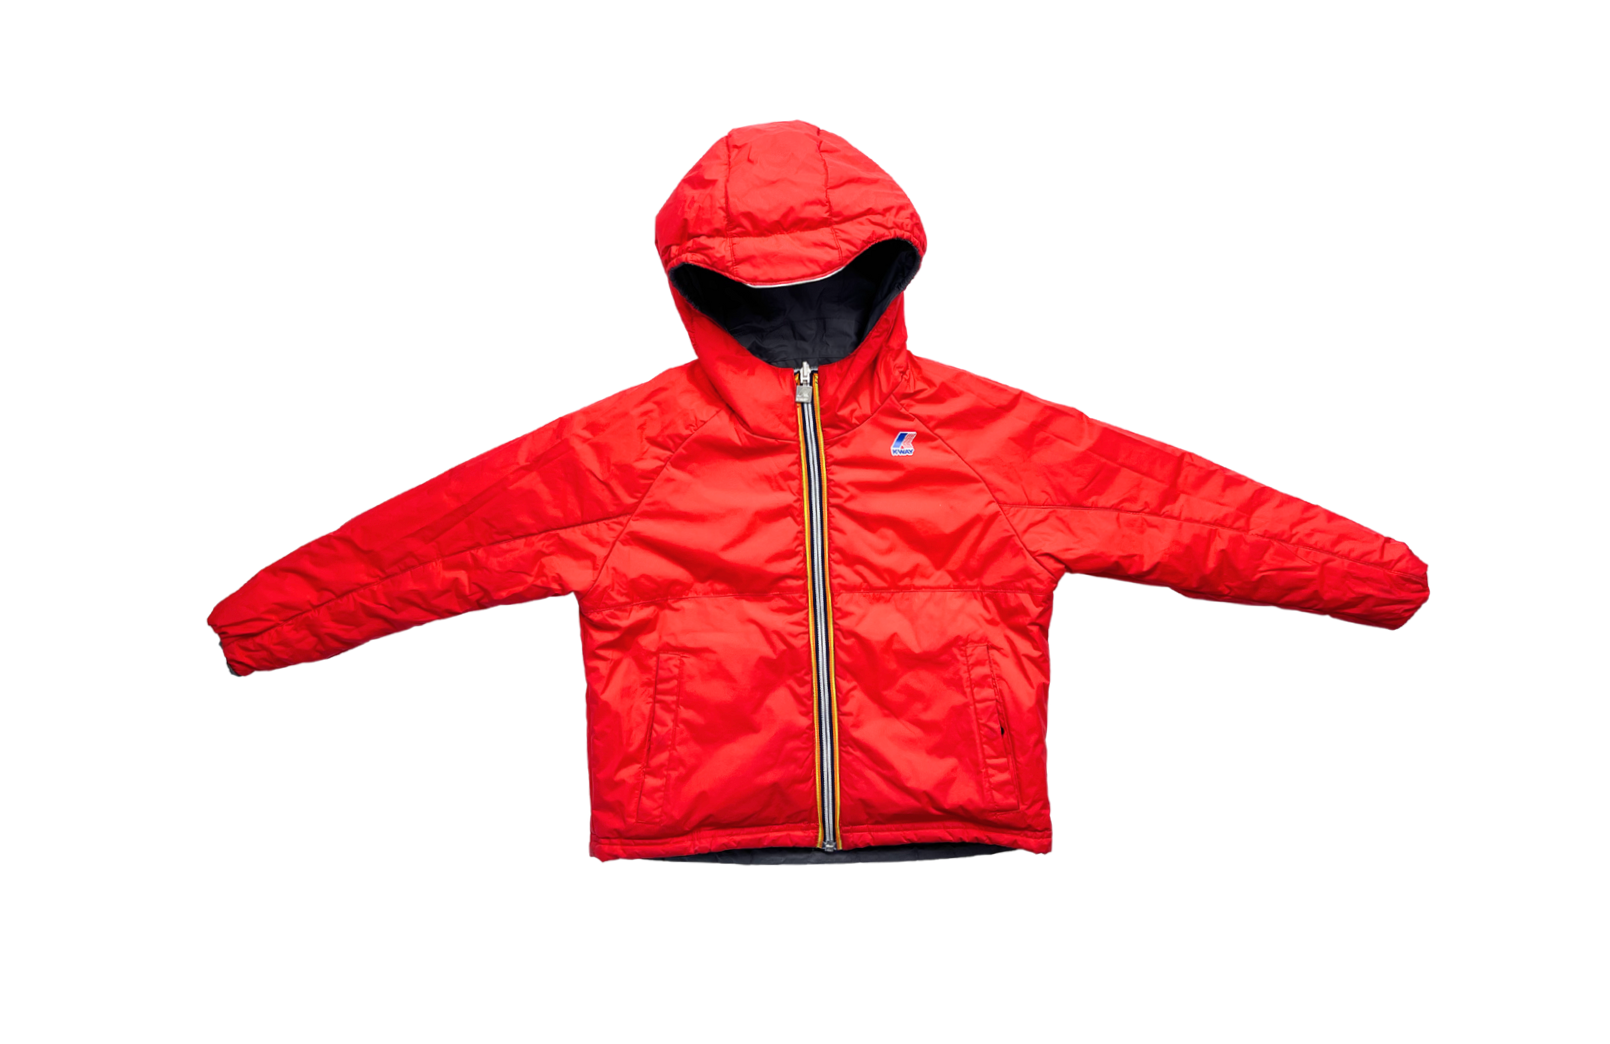 K-WAY - Veste à capuche épaisse réversible rouge et grise - 8 ans